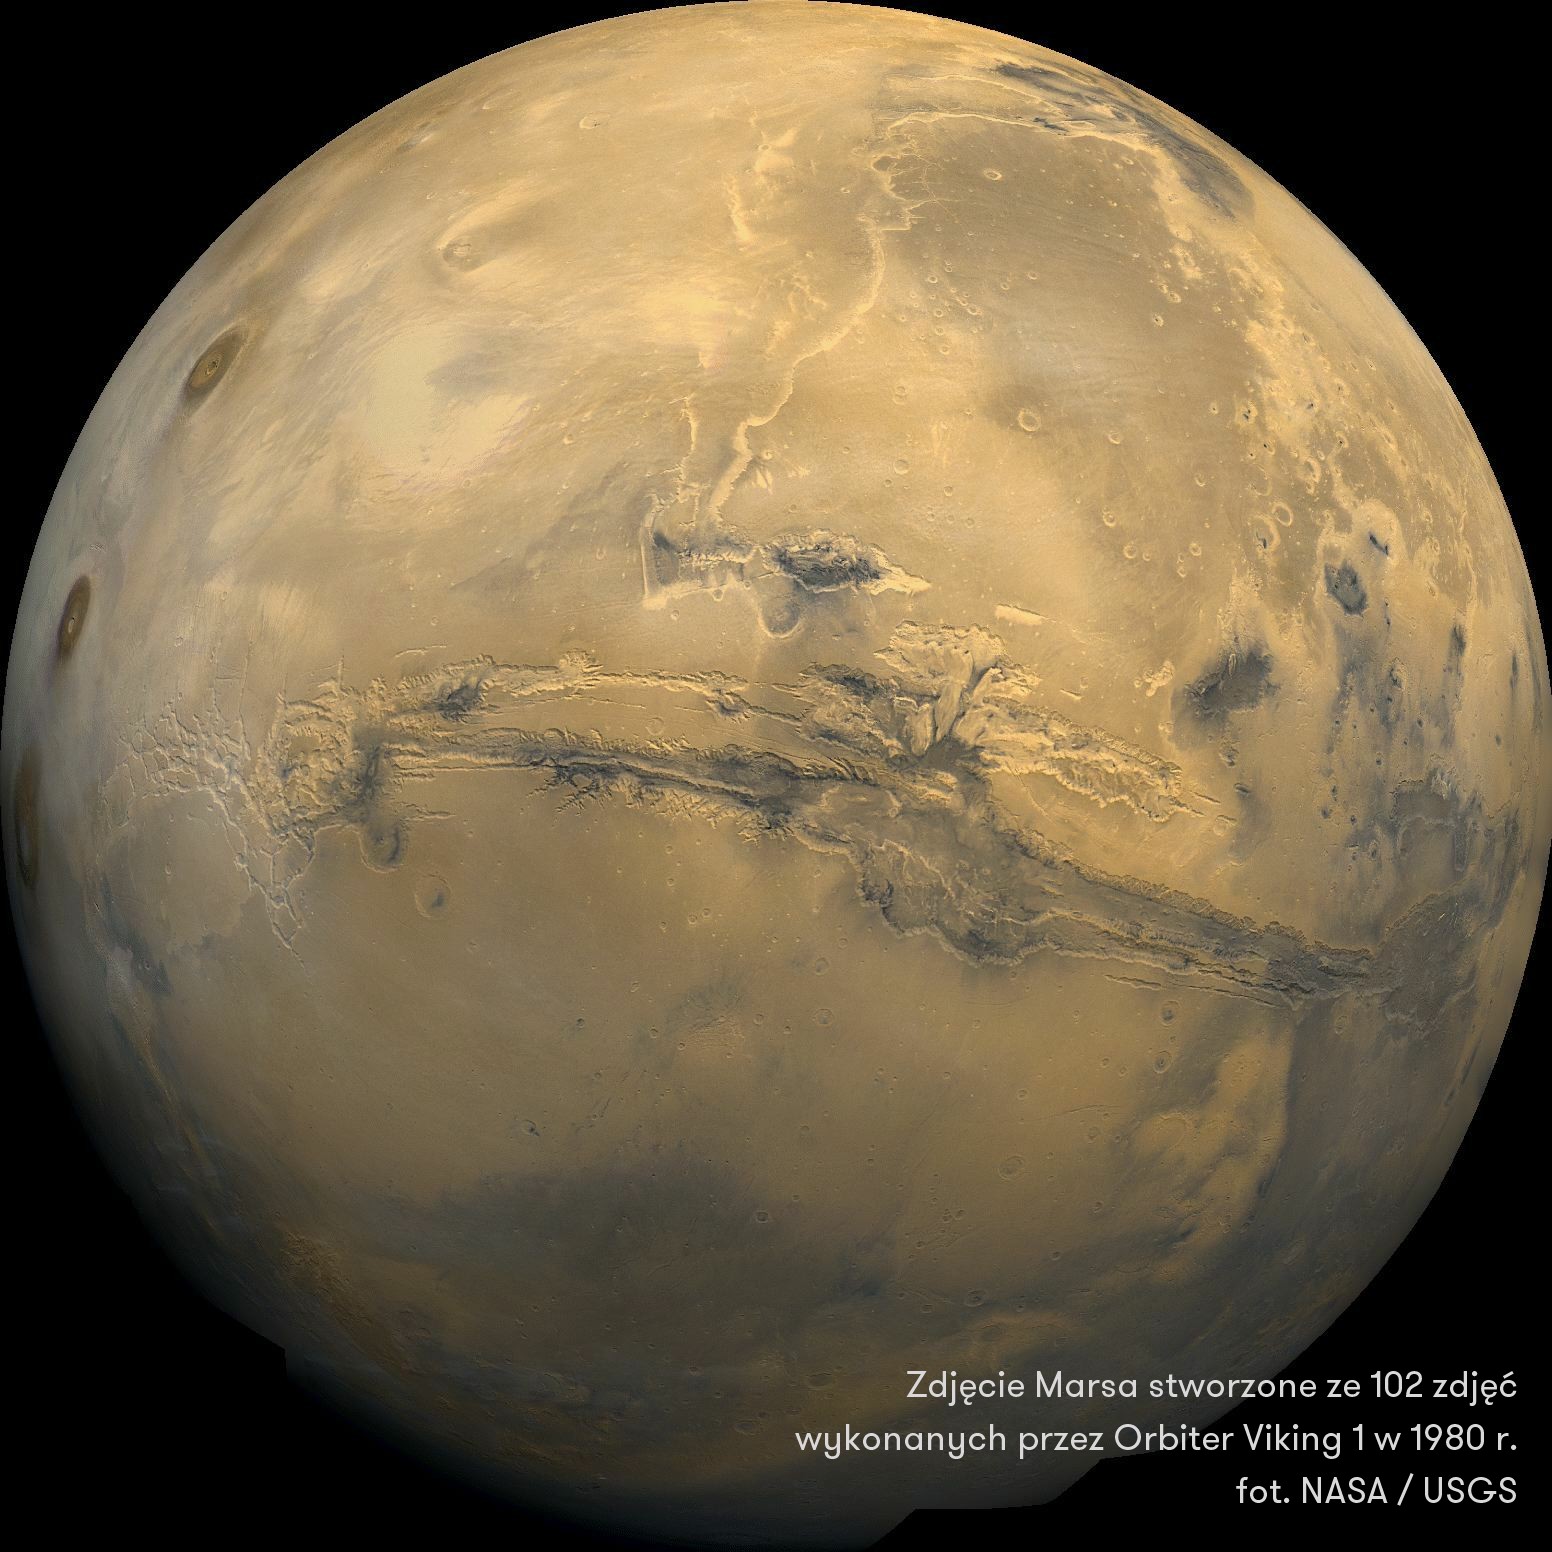 Zdjęcie Marsa stworzone ze 102 fotografii wykonanych przez Orbiter Viking 1 w 1980 roku